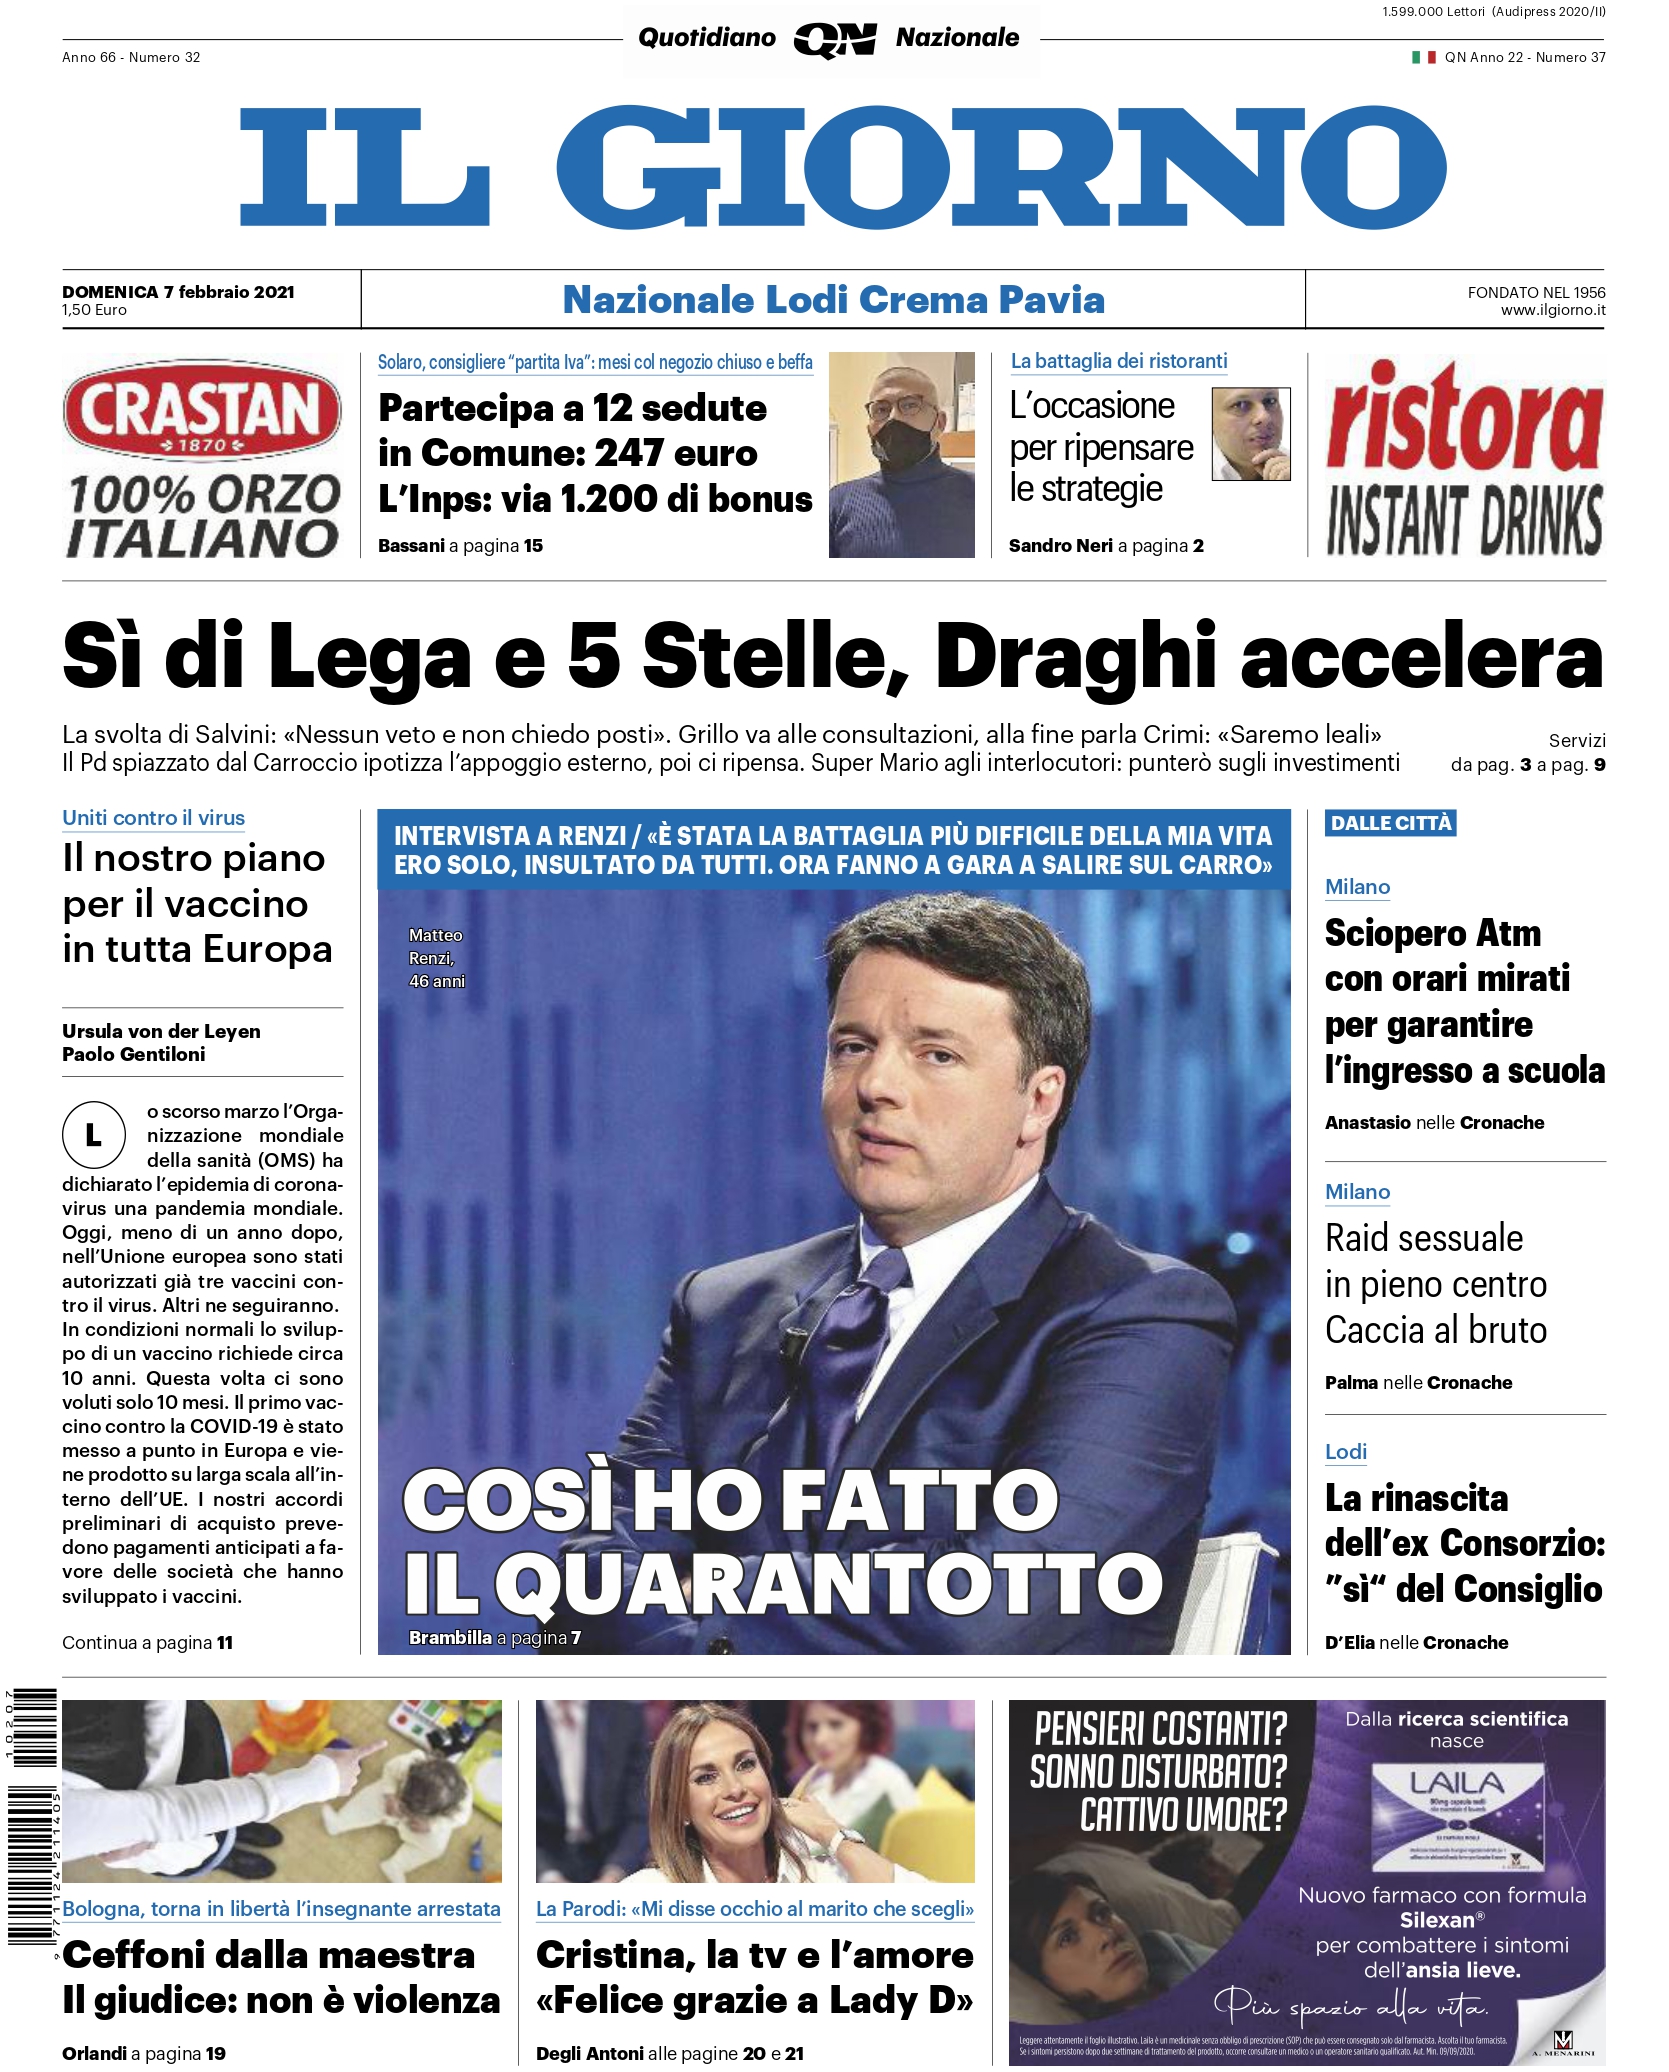 Intervista a Renzi: “Così ho fatto il quarantotto”